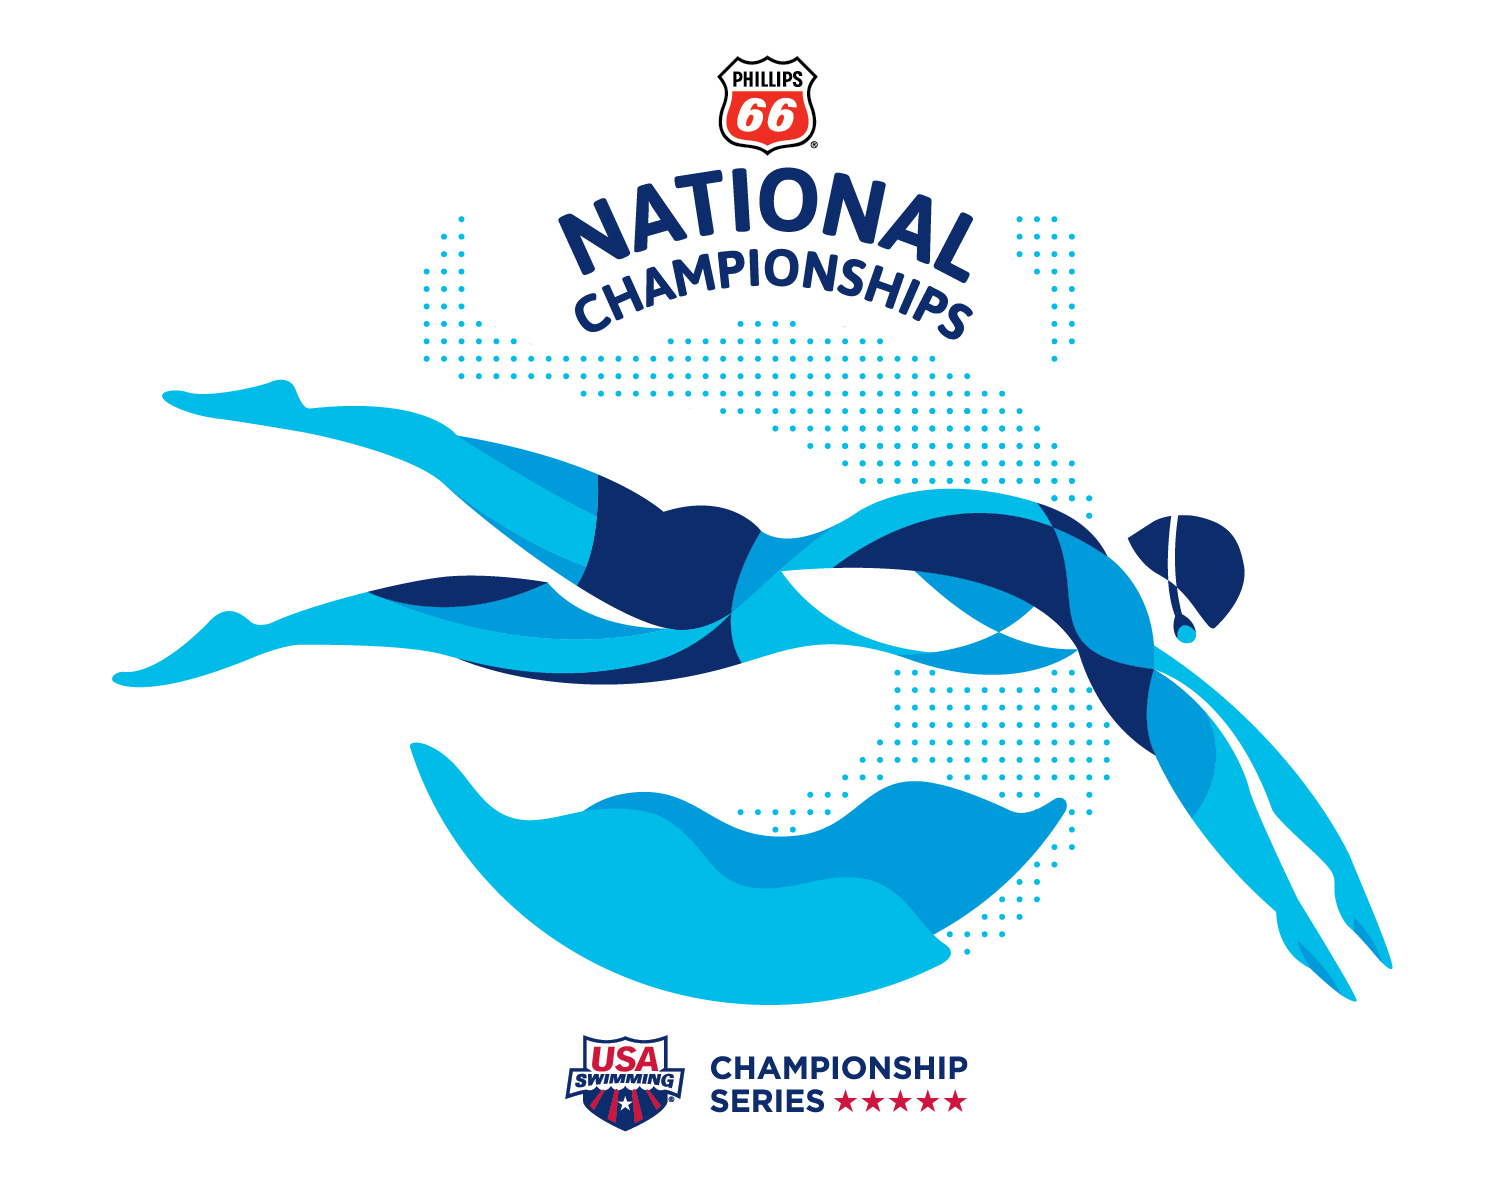 swimming logos images